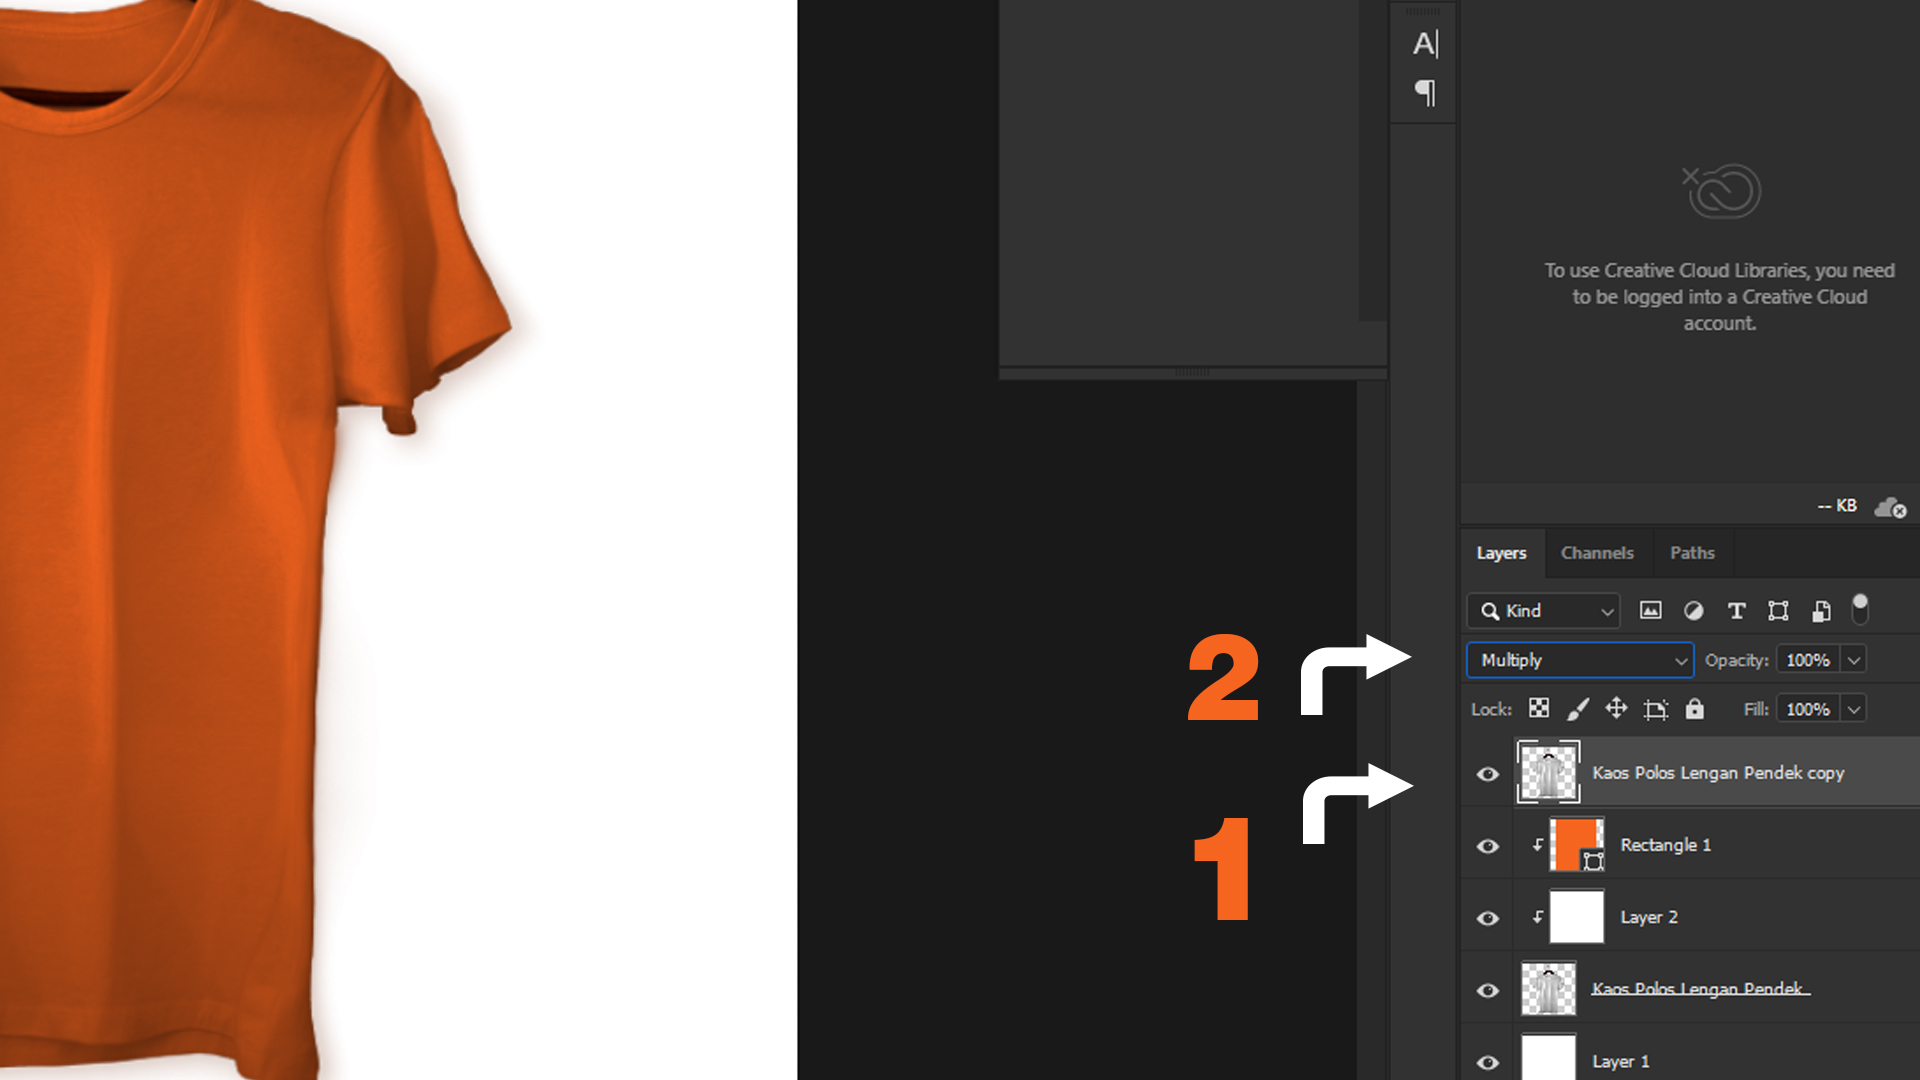 Download Inilah Cara Mudah untuk Membuat Mockup Kaos Lengan Pendek dengan photoshop cc